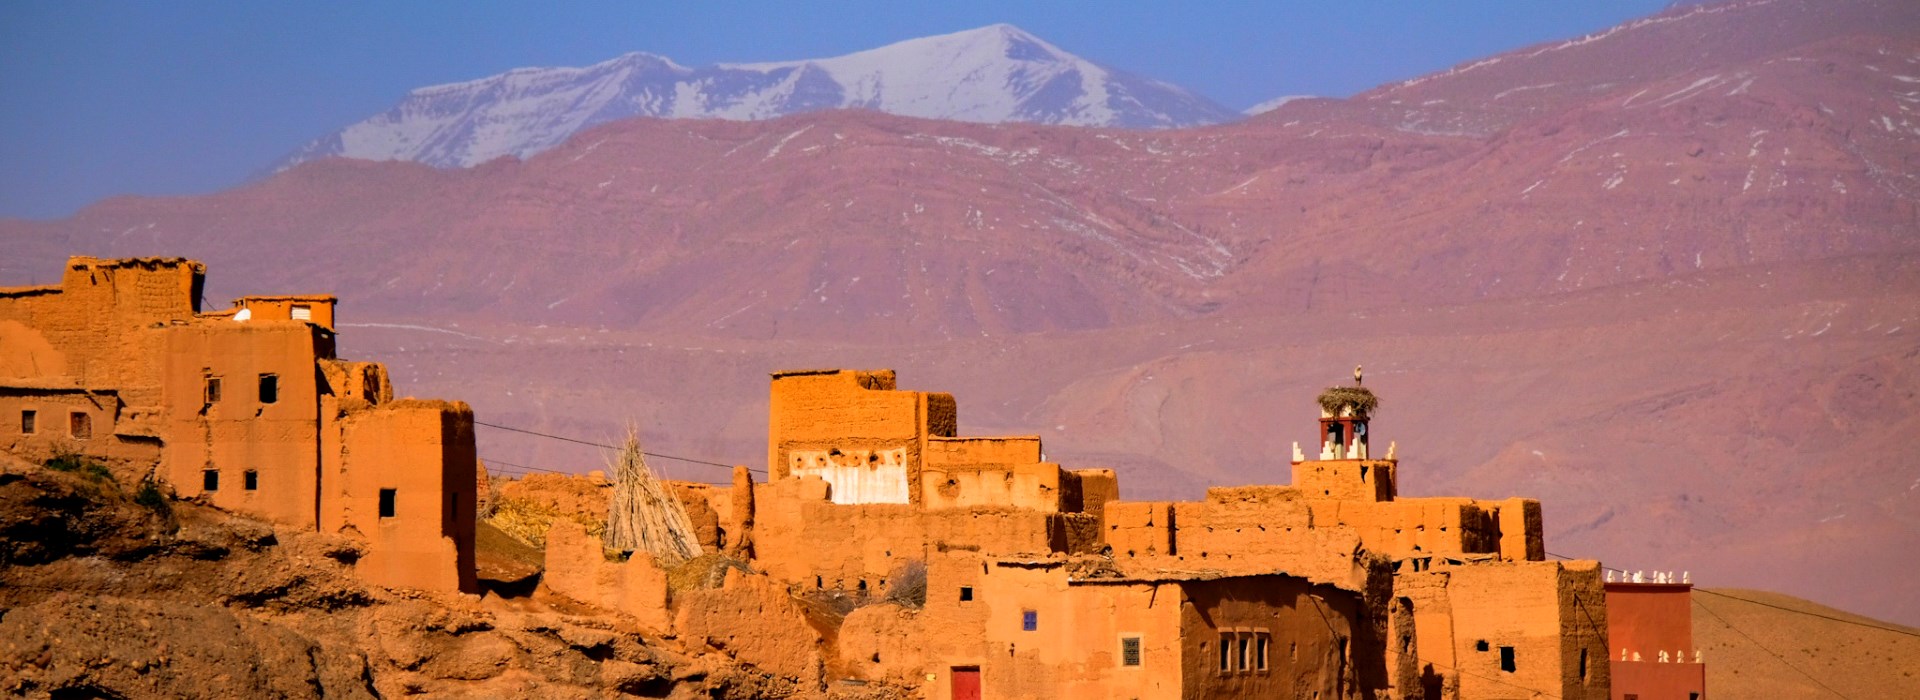 voyage solo maroc armoud